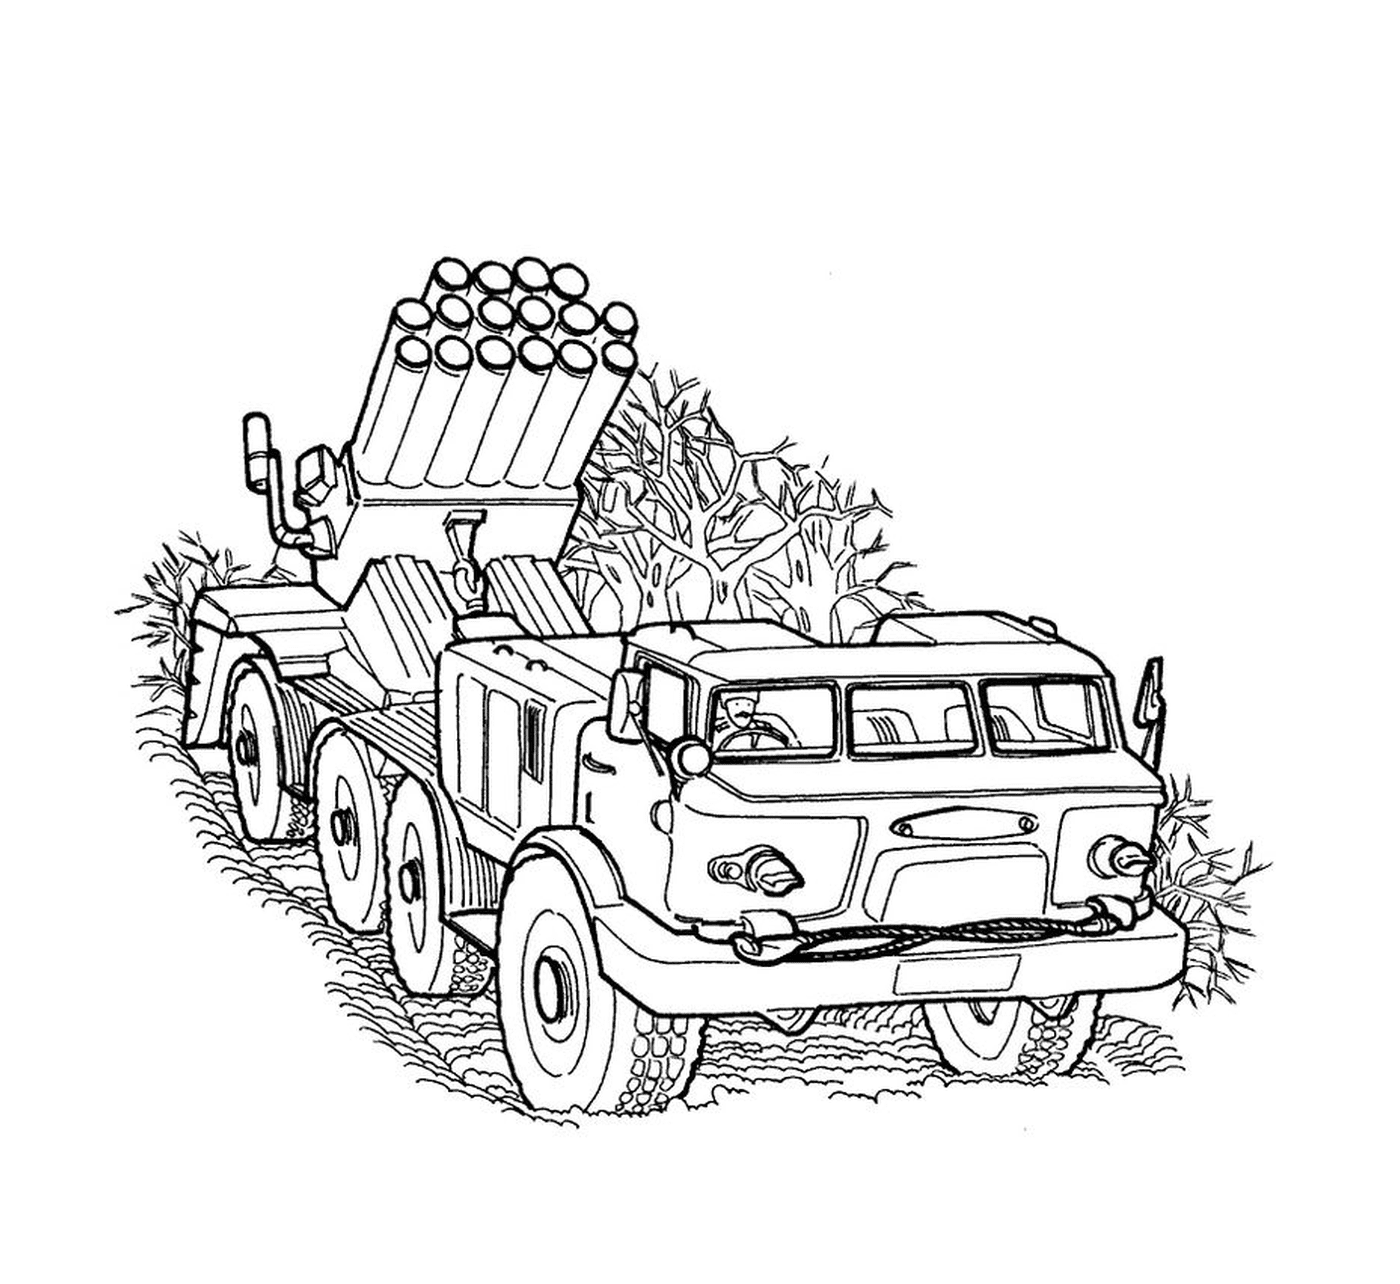  Militärfahrzeug: ein alter LKW mit Raketenwerfer 